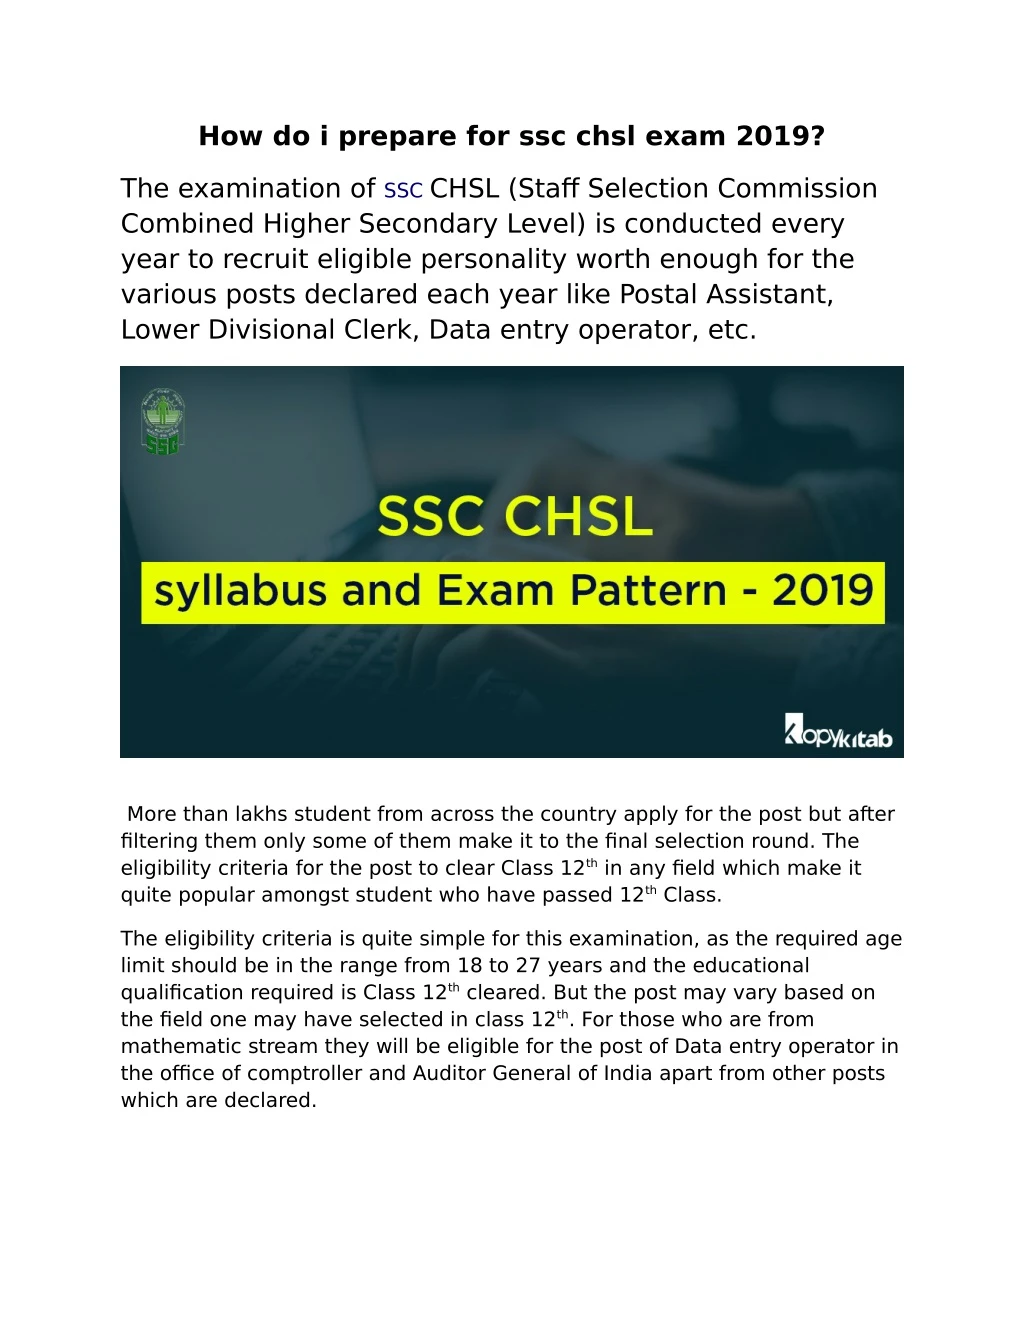 how do i prepare for ssc chsl exam 2019